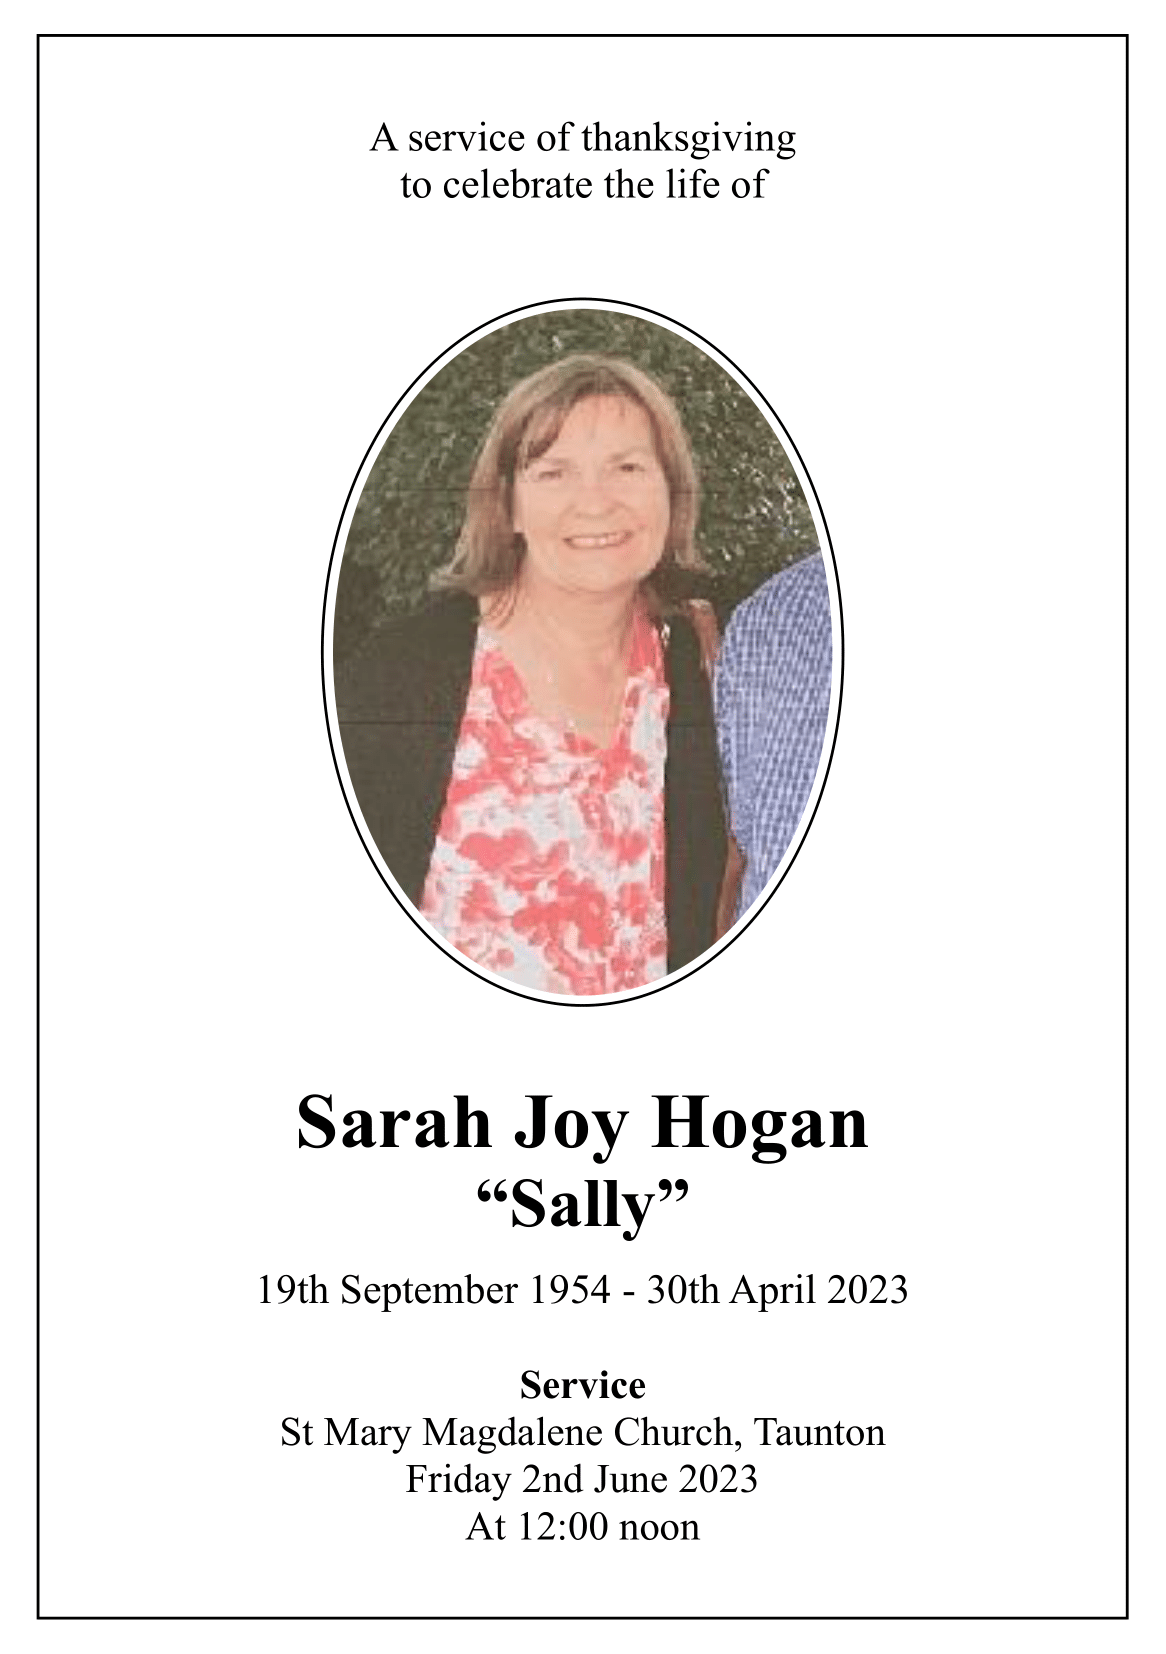 The Funeral of Sarah Joy Hogan